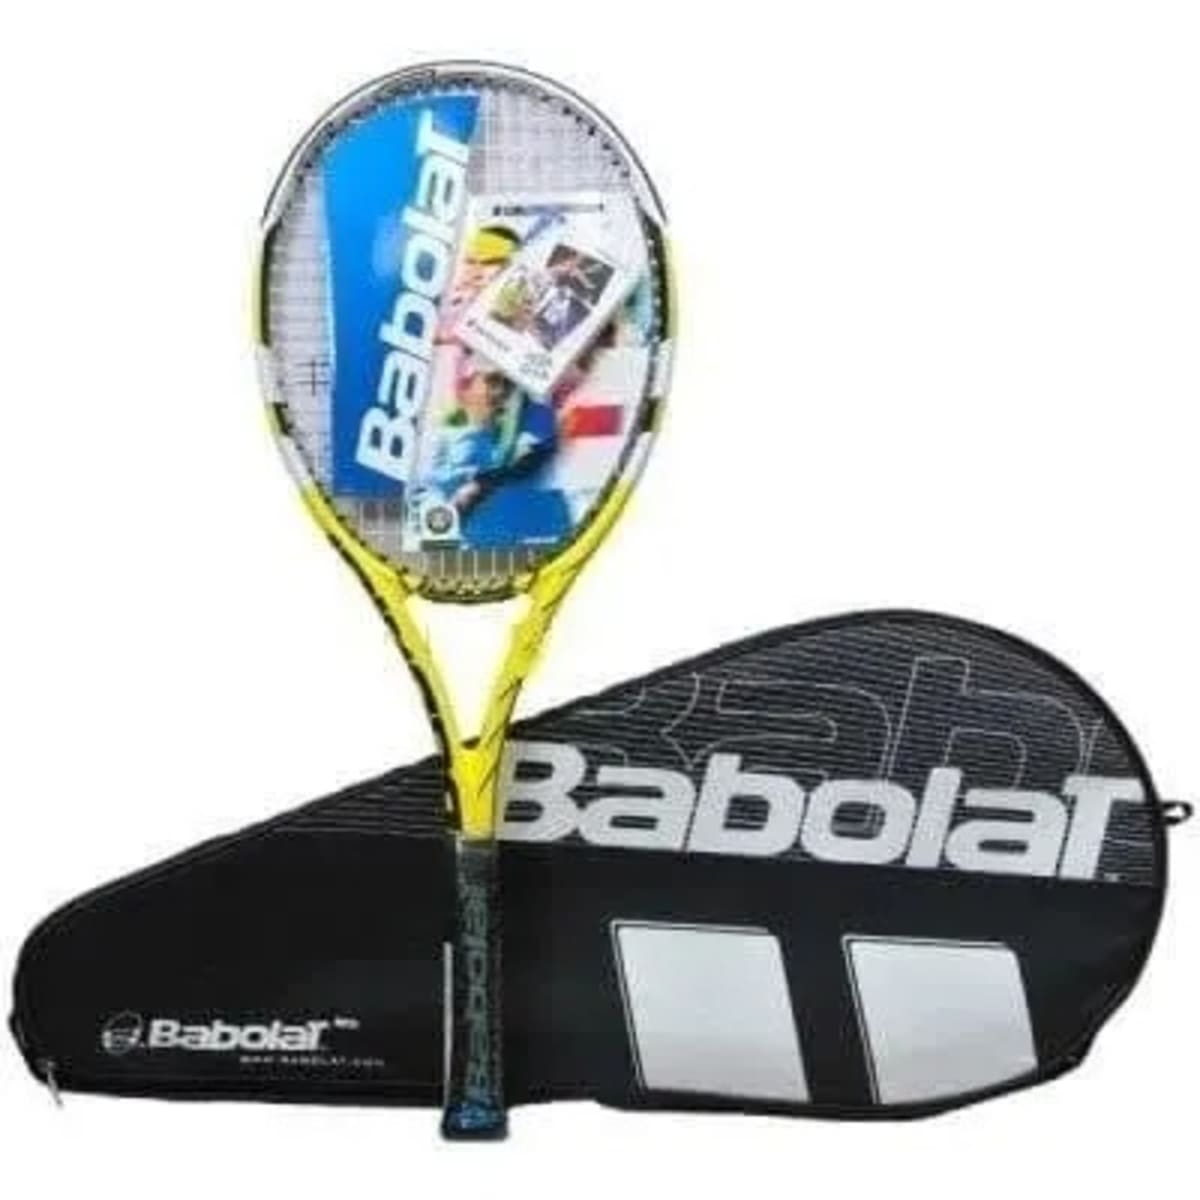 Professional Babolat Lawn Tennis Racket Konga Online Shopping